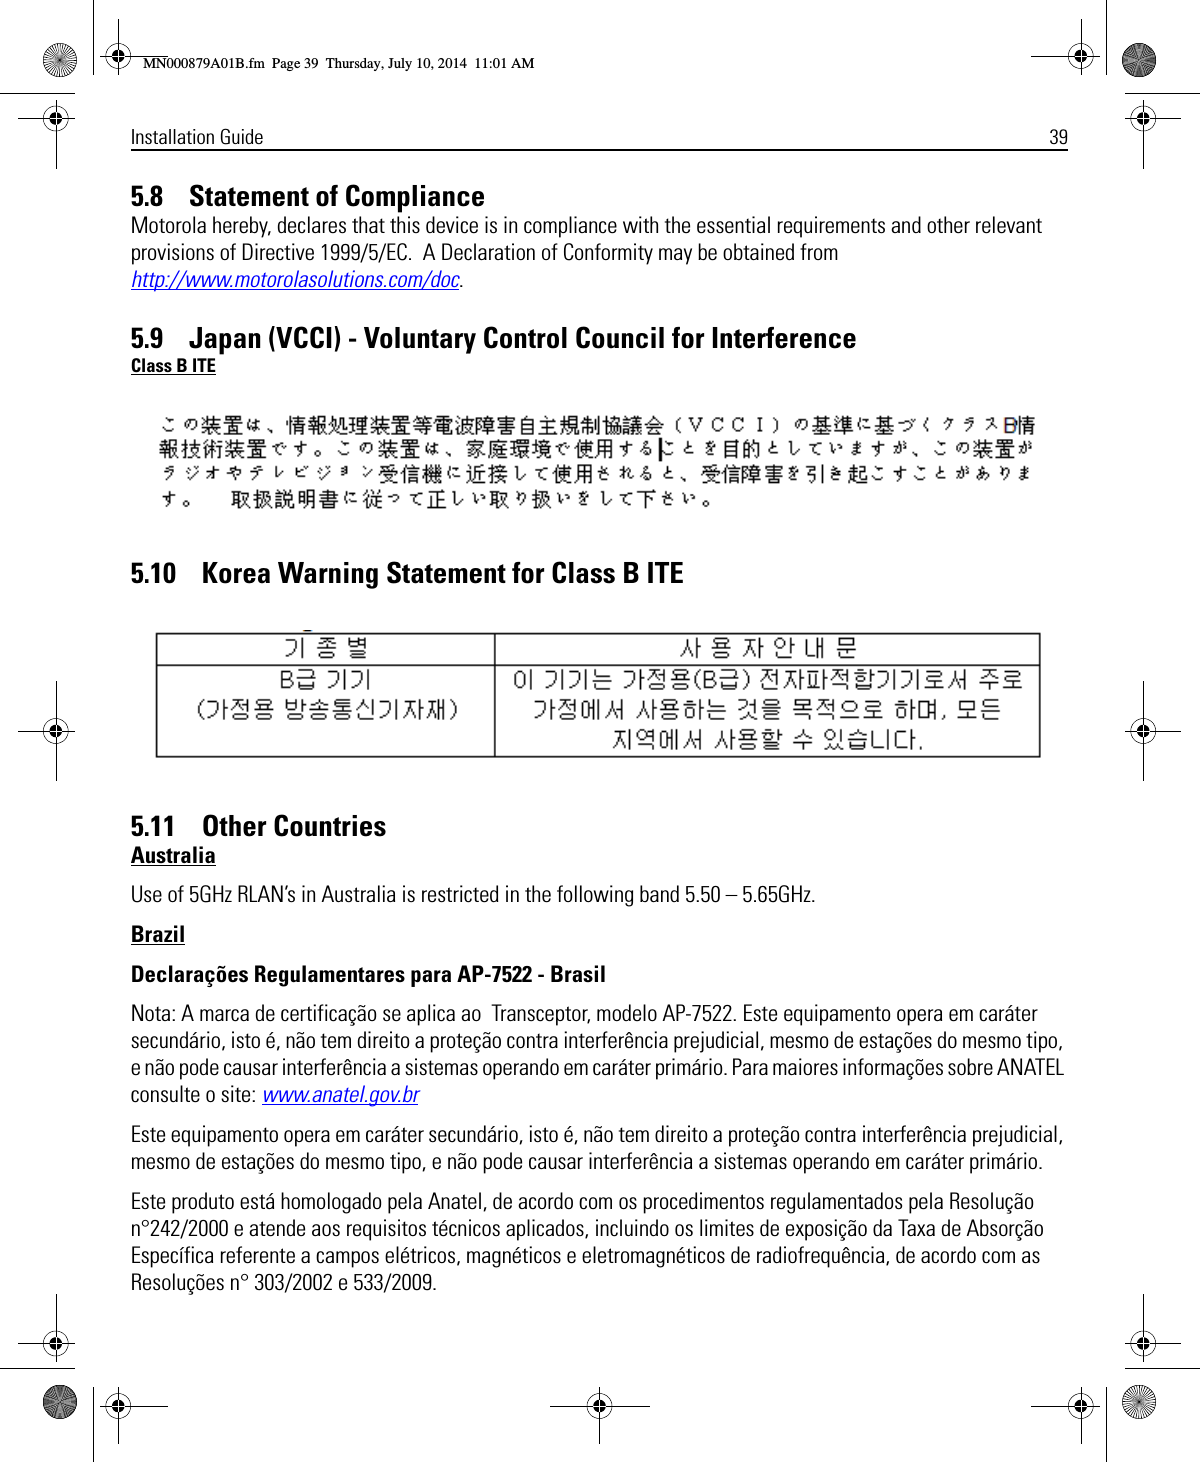 Installation Guide 395.8    Statement of ComplianceMotorola hereby, declares that this device is in compliance with the essential requirements and other relevant provisions of Directive 1999/5/EC.  A Declaration of Conformity may be obtained from http://www.motorolasolutions.com/doc.5.9    Japan (VCCI) - Voluntary Control Council for InterferenceClass B ITE5.10    Korea Warning Statement for Class B ITE5.11    Other CountriesAustraliaUse of 5GHz RLAN’s in Australia is restricted in the following band 5.50 – 5.65GHz.BrazilDeclarações Regulamentares para AP-7522 - BrasilNota: A marca de certificação se aplica ao  Transceptor, modelo AP-7522. Este equipamento opera em caráter secundário, isto é, não tem direito a proteção contra interferência prejudicial, mesmo de estações do mesmo tipo, e não pode causar interferência a sistemas operando em caráter primário. Para maiores informações sobre ANATEL consulte o site: www.anatel.gov.brEste equipamento opera em caráter secundário, isto é, não tem direito a proteção contra interferência prejudicial, mesmo de estações do mesmo tipo, e não pode causar interferência a sistemas operando em caráter primário.Este produto está homologado pela Anatel, de acordo com os procedimentos regulamentados pela Resolução n°242/2000 e atende aos requisitos técnicos aplicados, incluindo os limites de exposição da Taxa de Absorção Específica referente a campos elétricos, magnéticos e eletromagnéticos de radiofrequência, de acordo com as  Resoluções n° 303/2002 e 533/2009.MN000879A01B.fm  Page 39  Thursday, July 10, 2014  11:01 AM